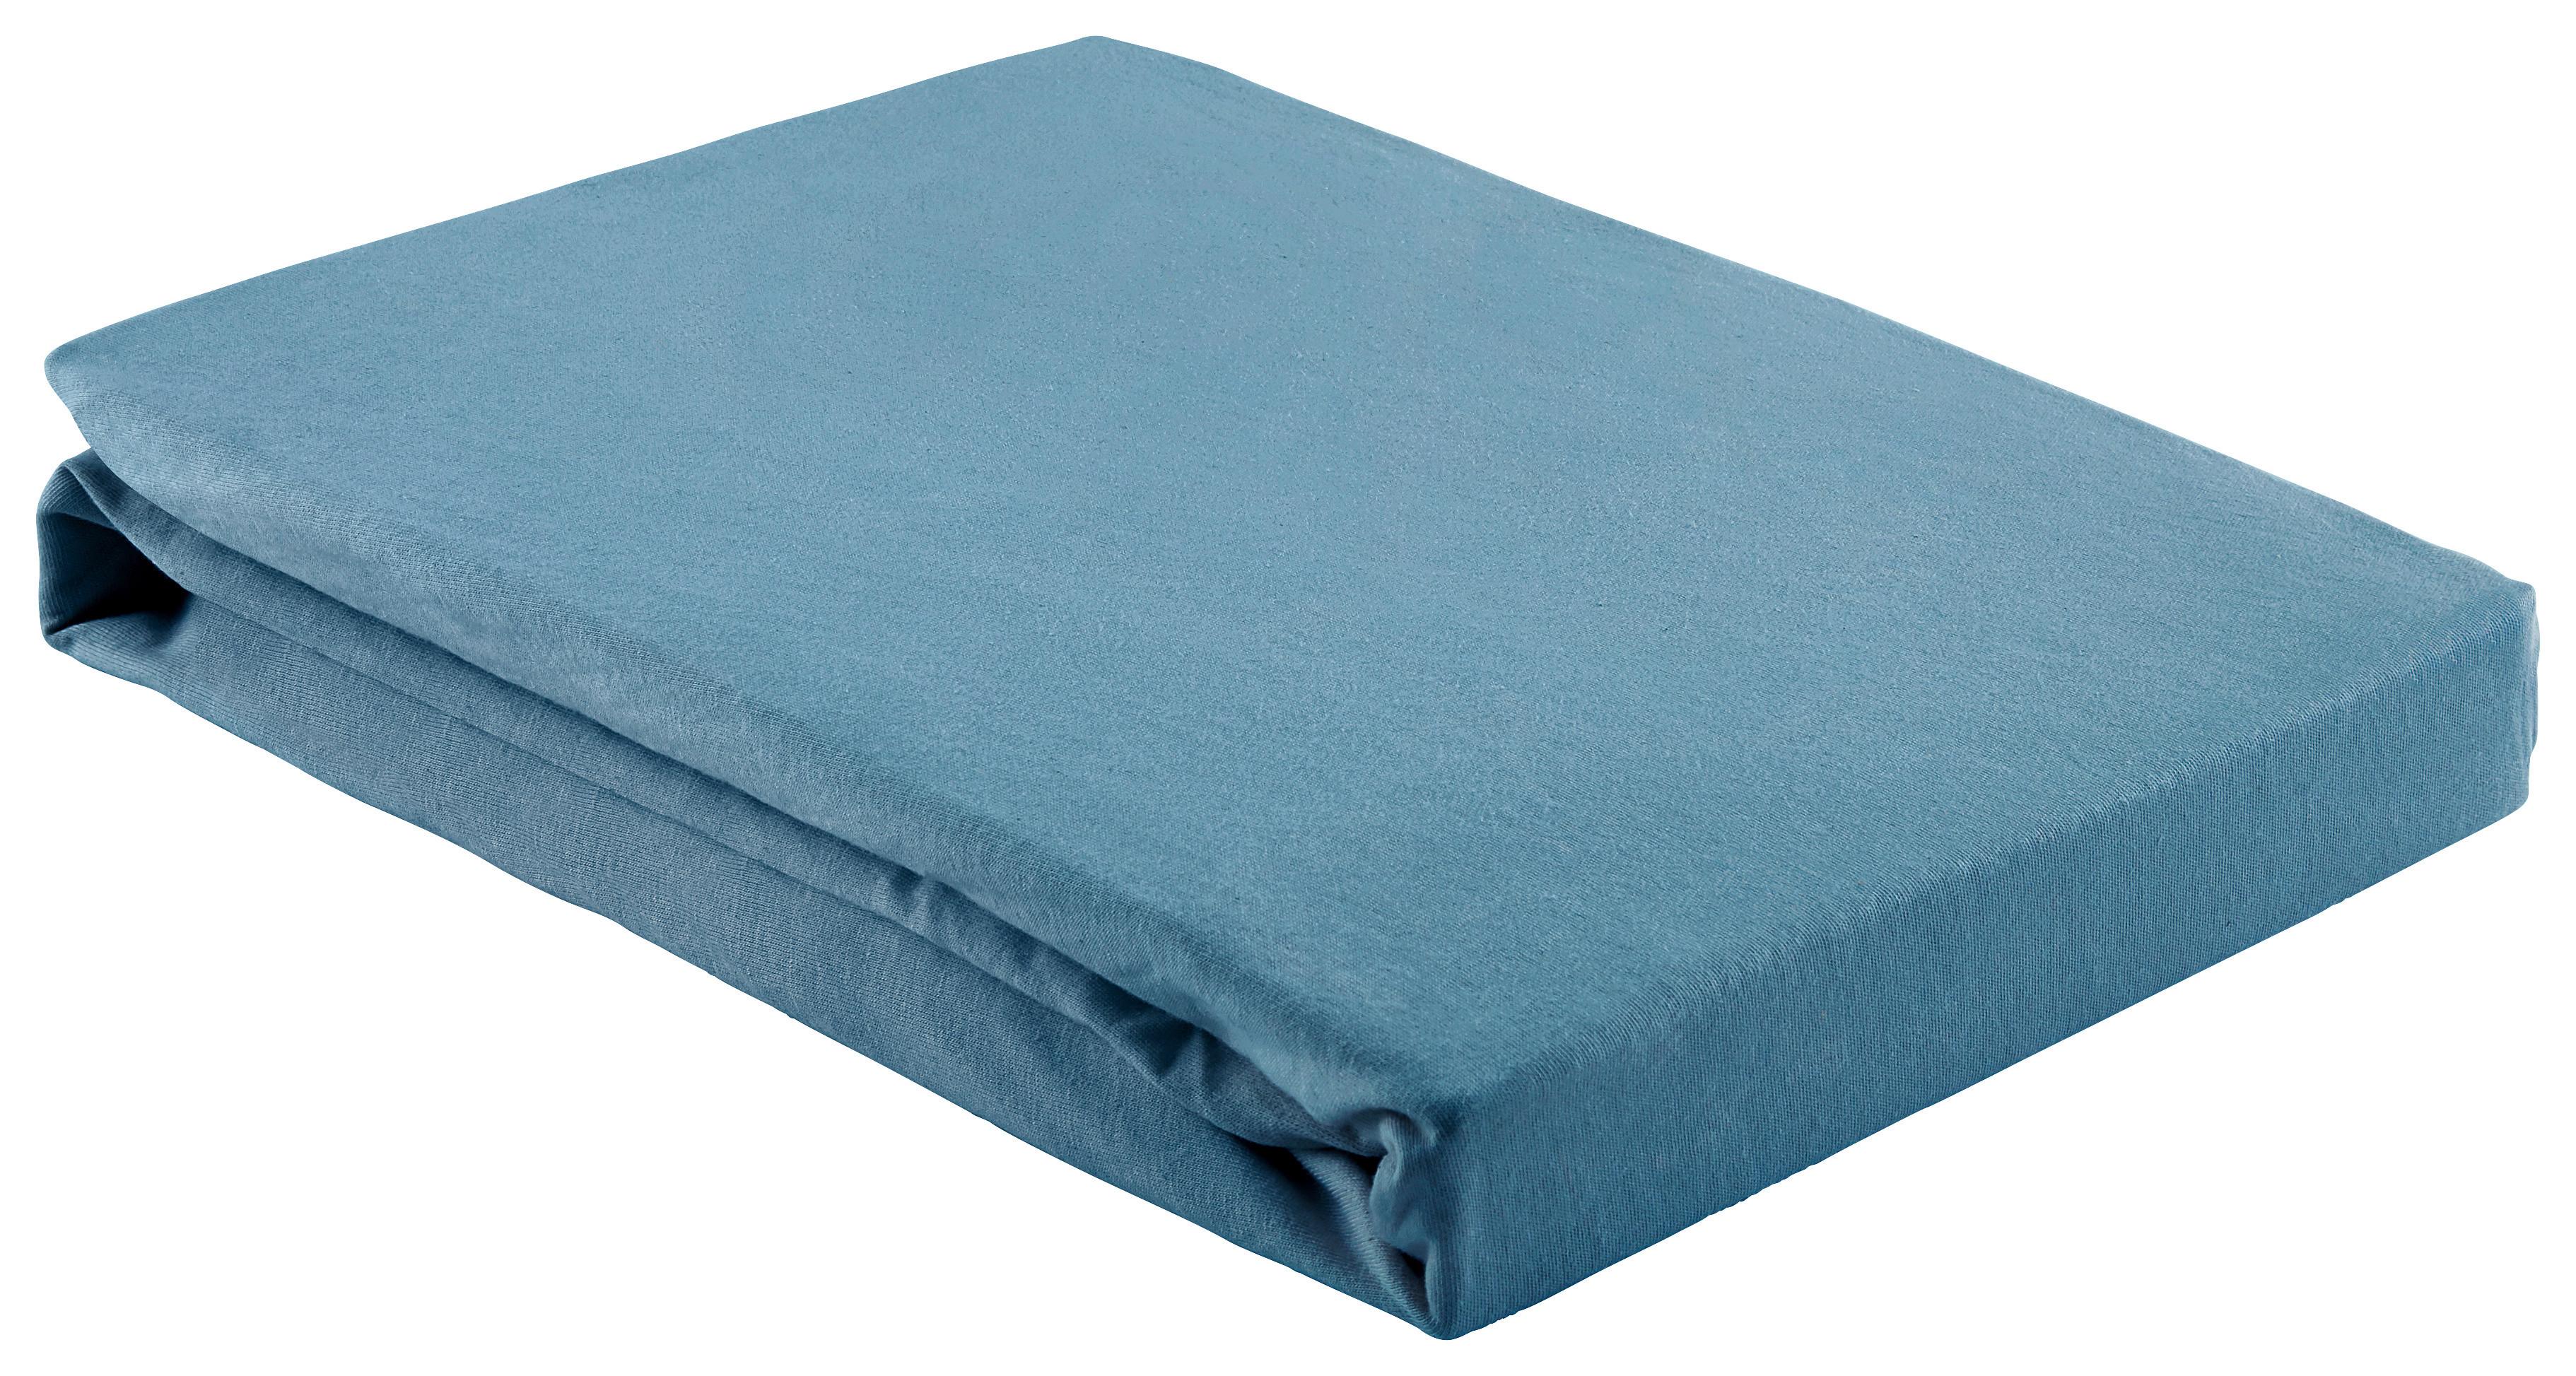 Spannbetttuch Basic in Blau ca. 150x200cm - Dunkelblau, Textil (150/200cm) - Modern Living